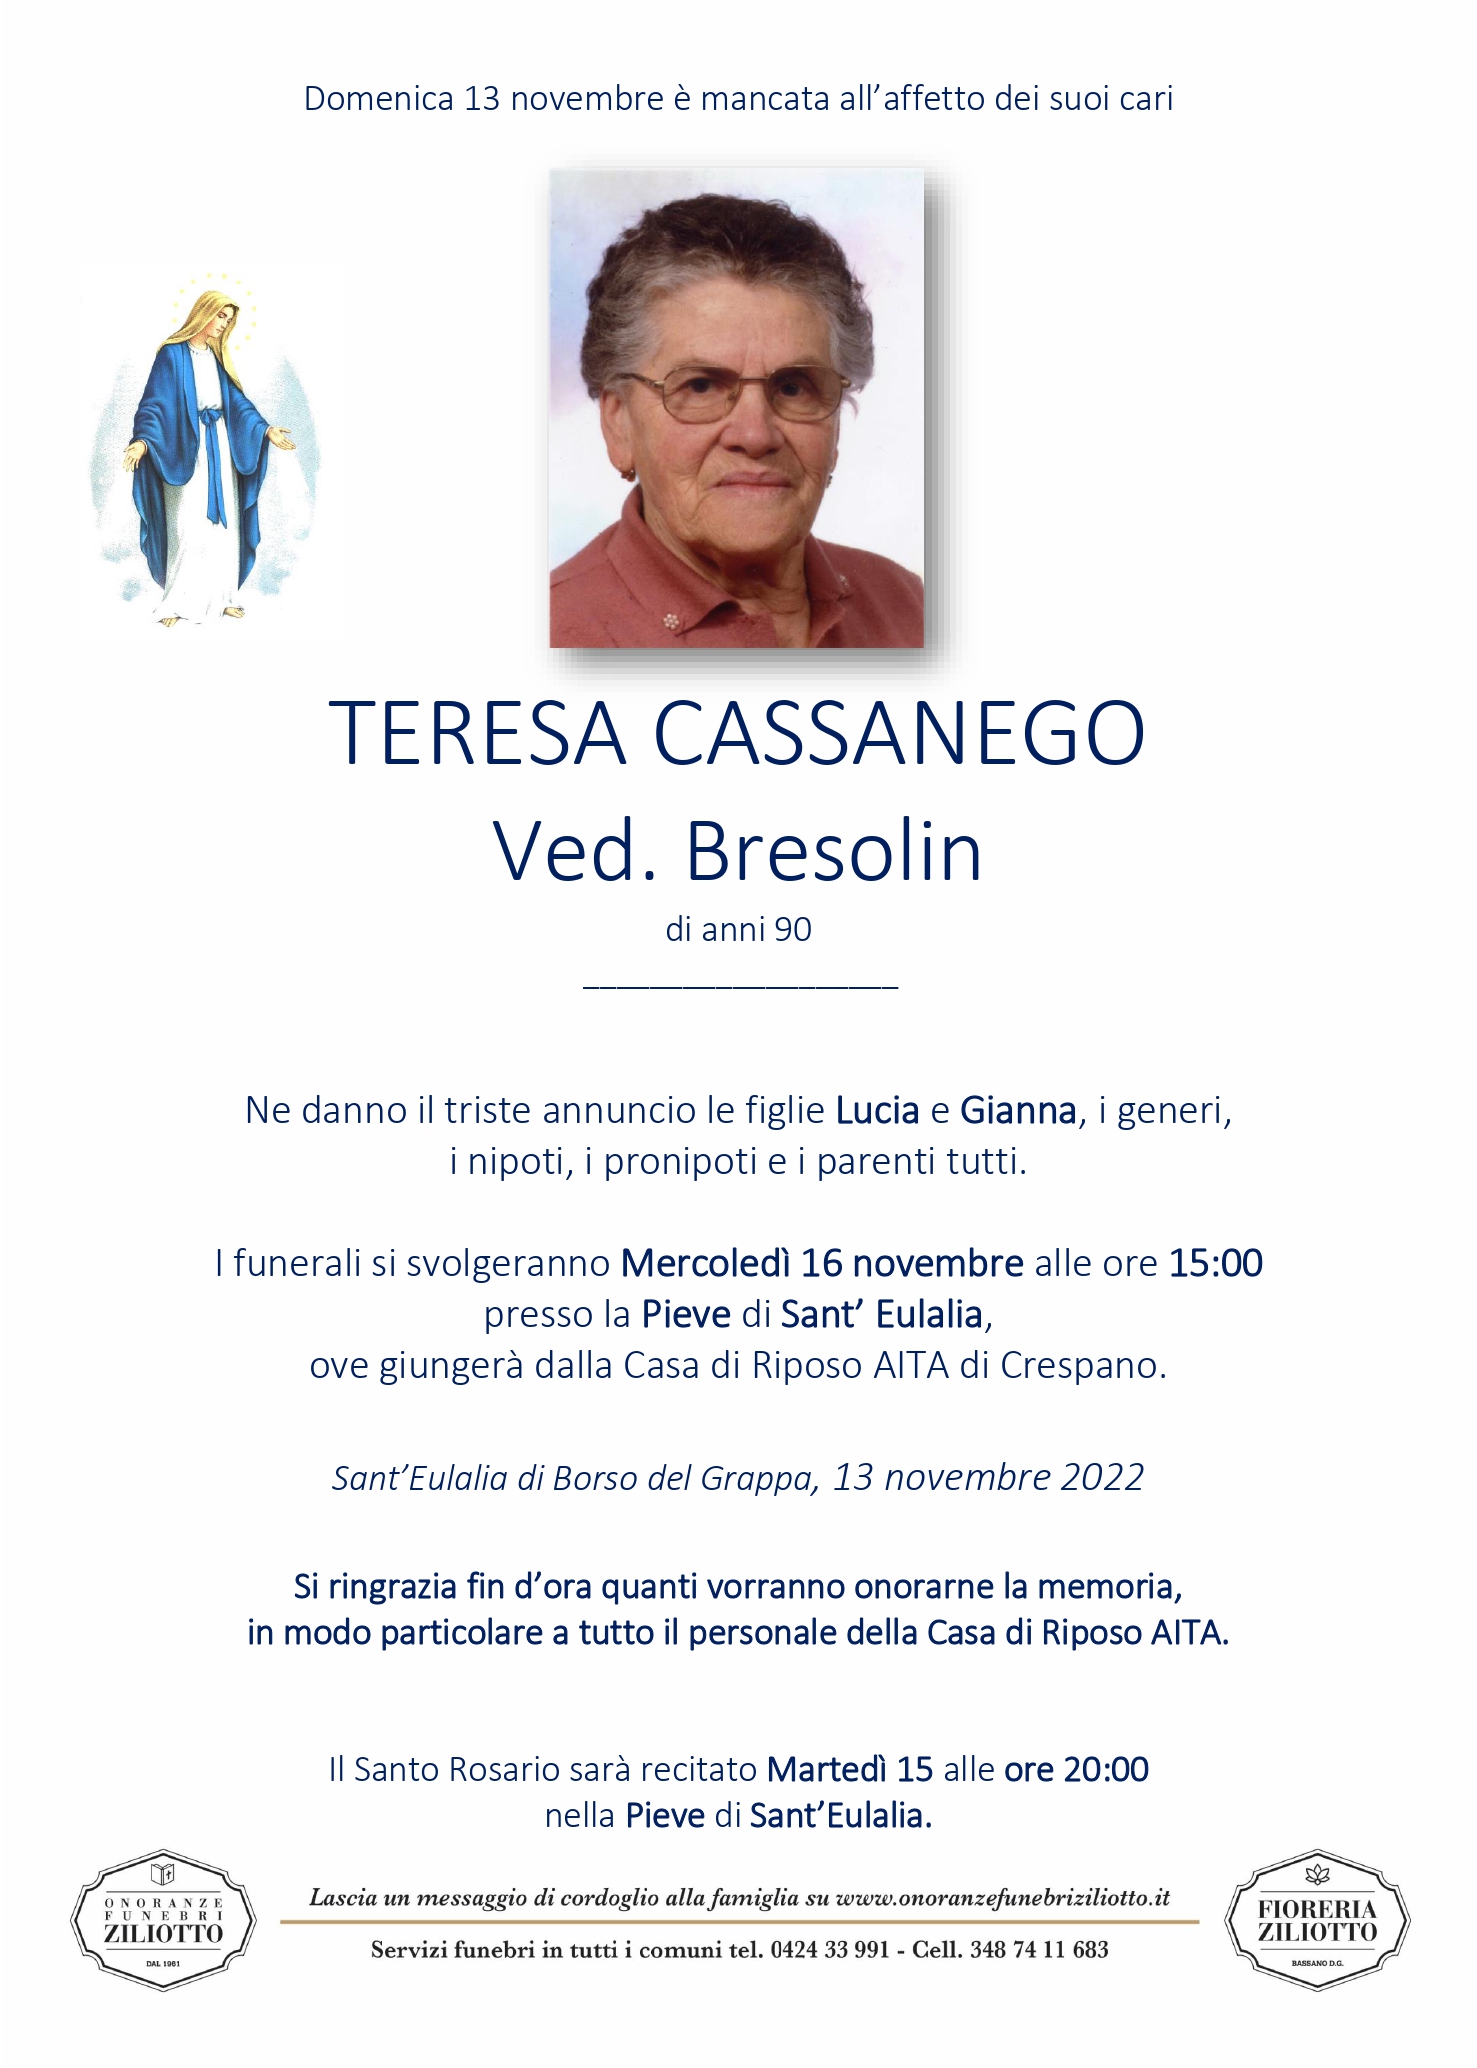 Teresa Cassanego - 90 anni - Borso del Grappa